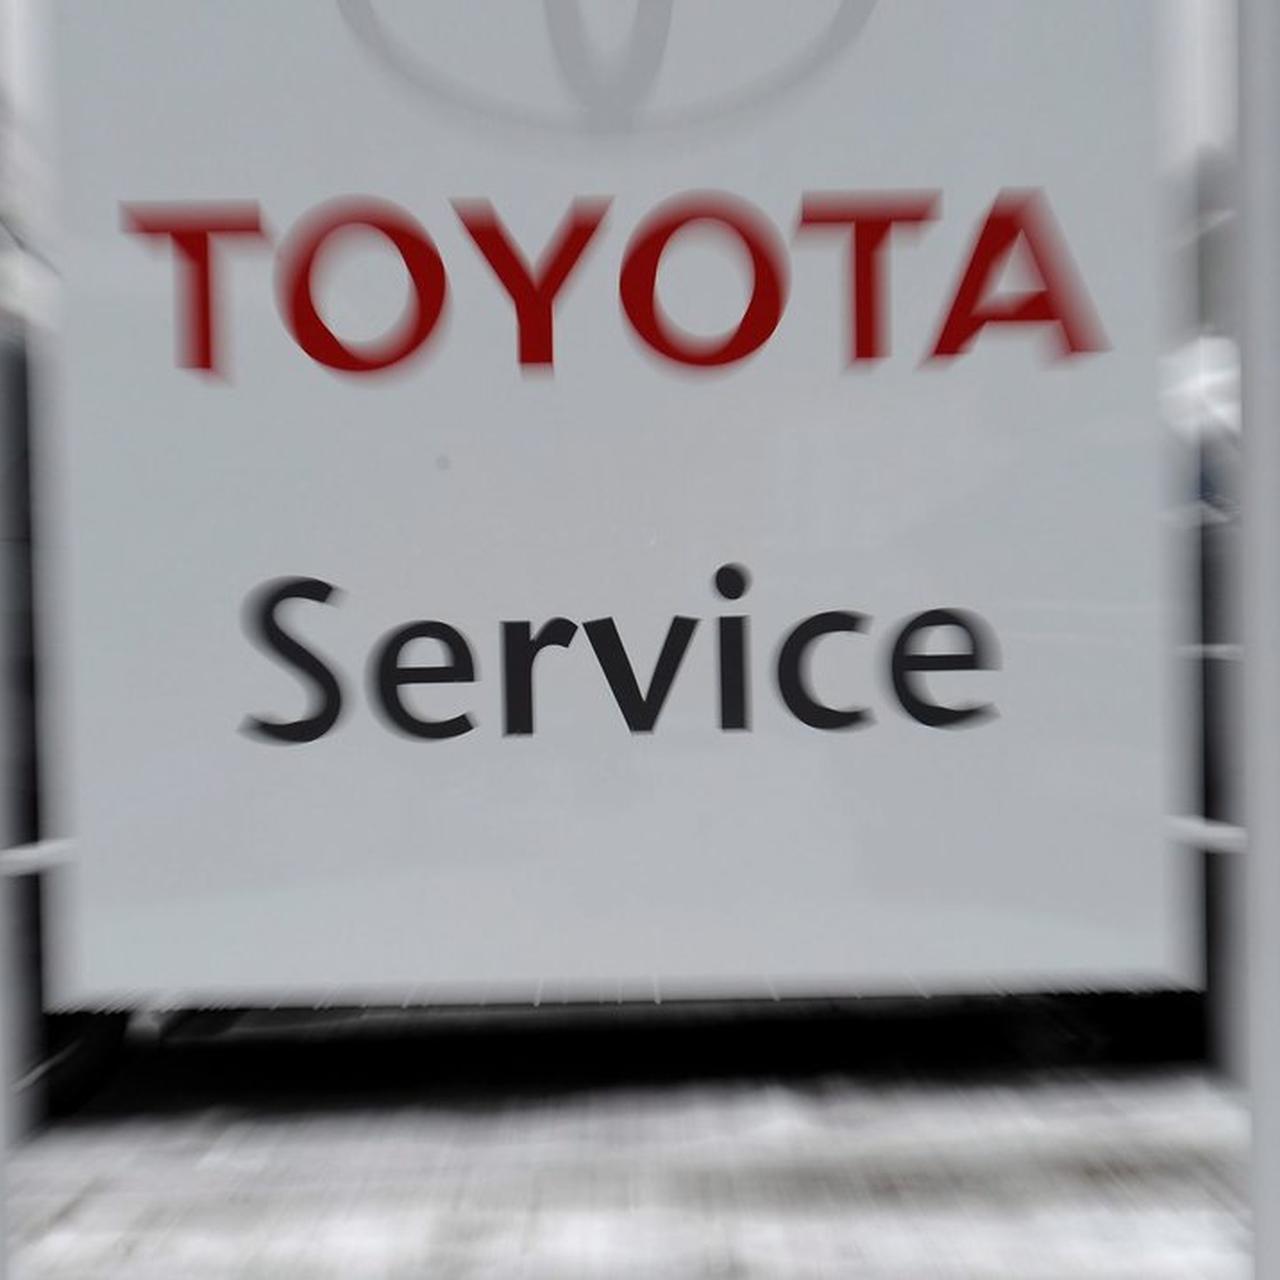 Paliwo Cieknie Z Toyoty - Tvn24 Biznes